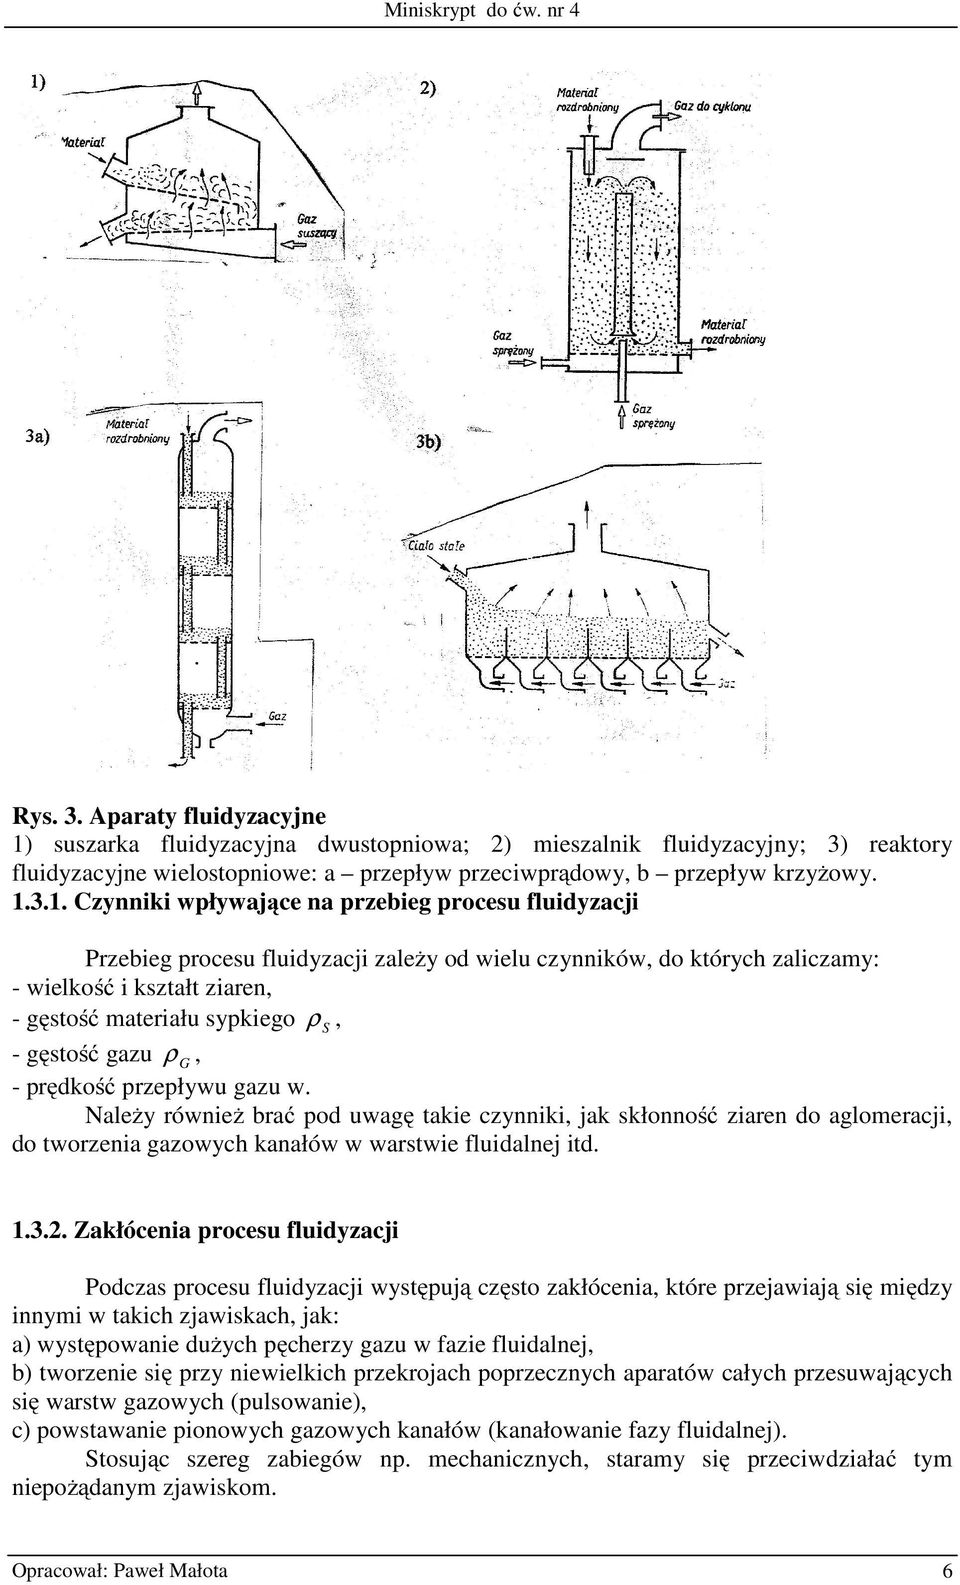 suszarka fluidyzacyjna dwustopniowa; 2) mieszalnik fluidyzacyjny; 3) reaktory fluidyzacyjne wielostopniowe: a przepływ przeciwprądowy, b przepływ krzyŝowy. 1.